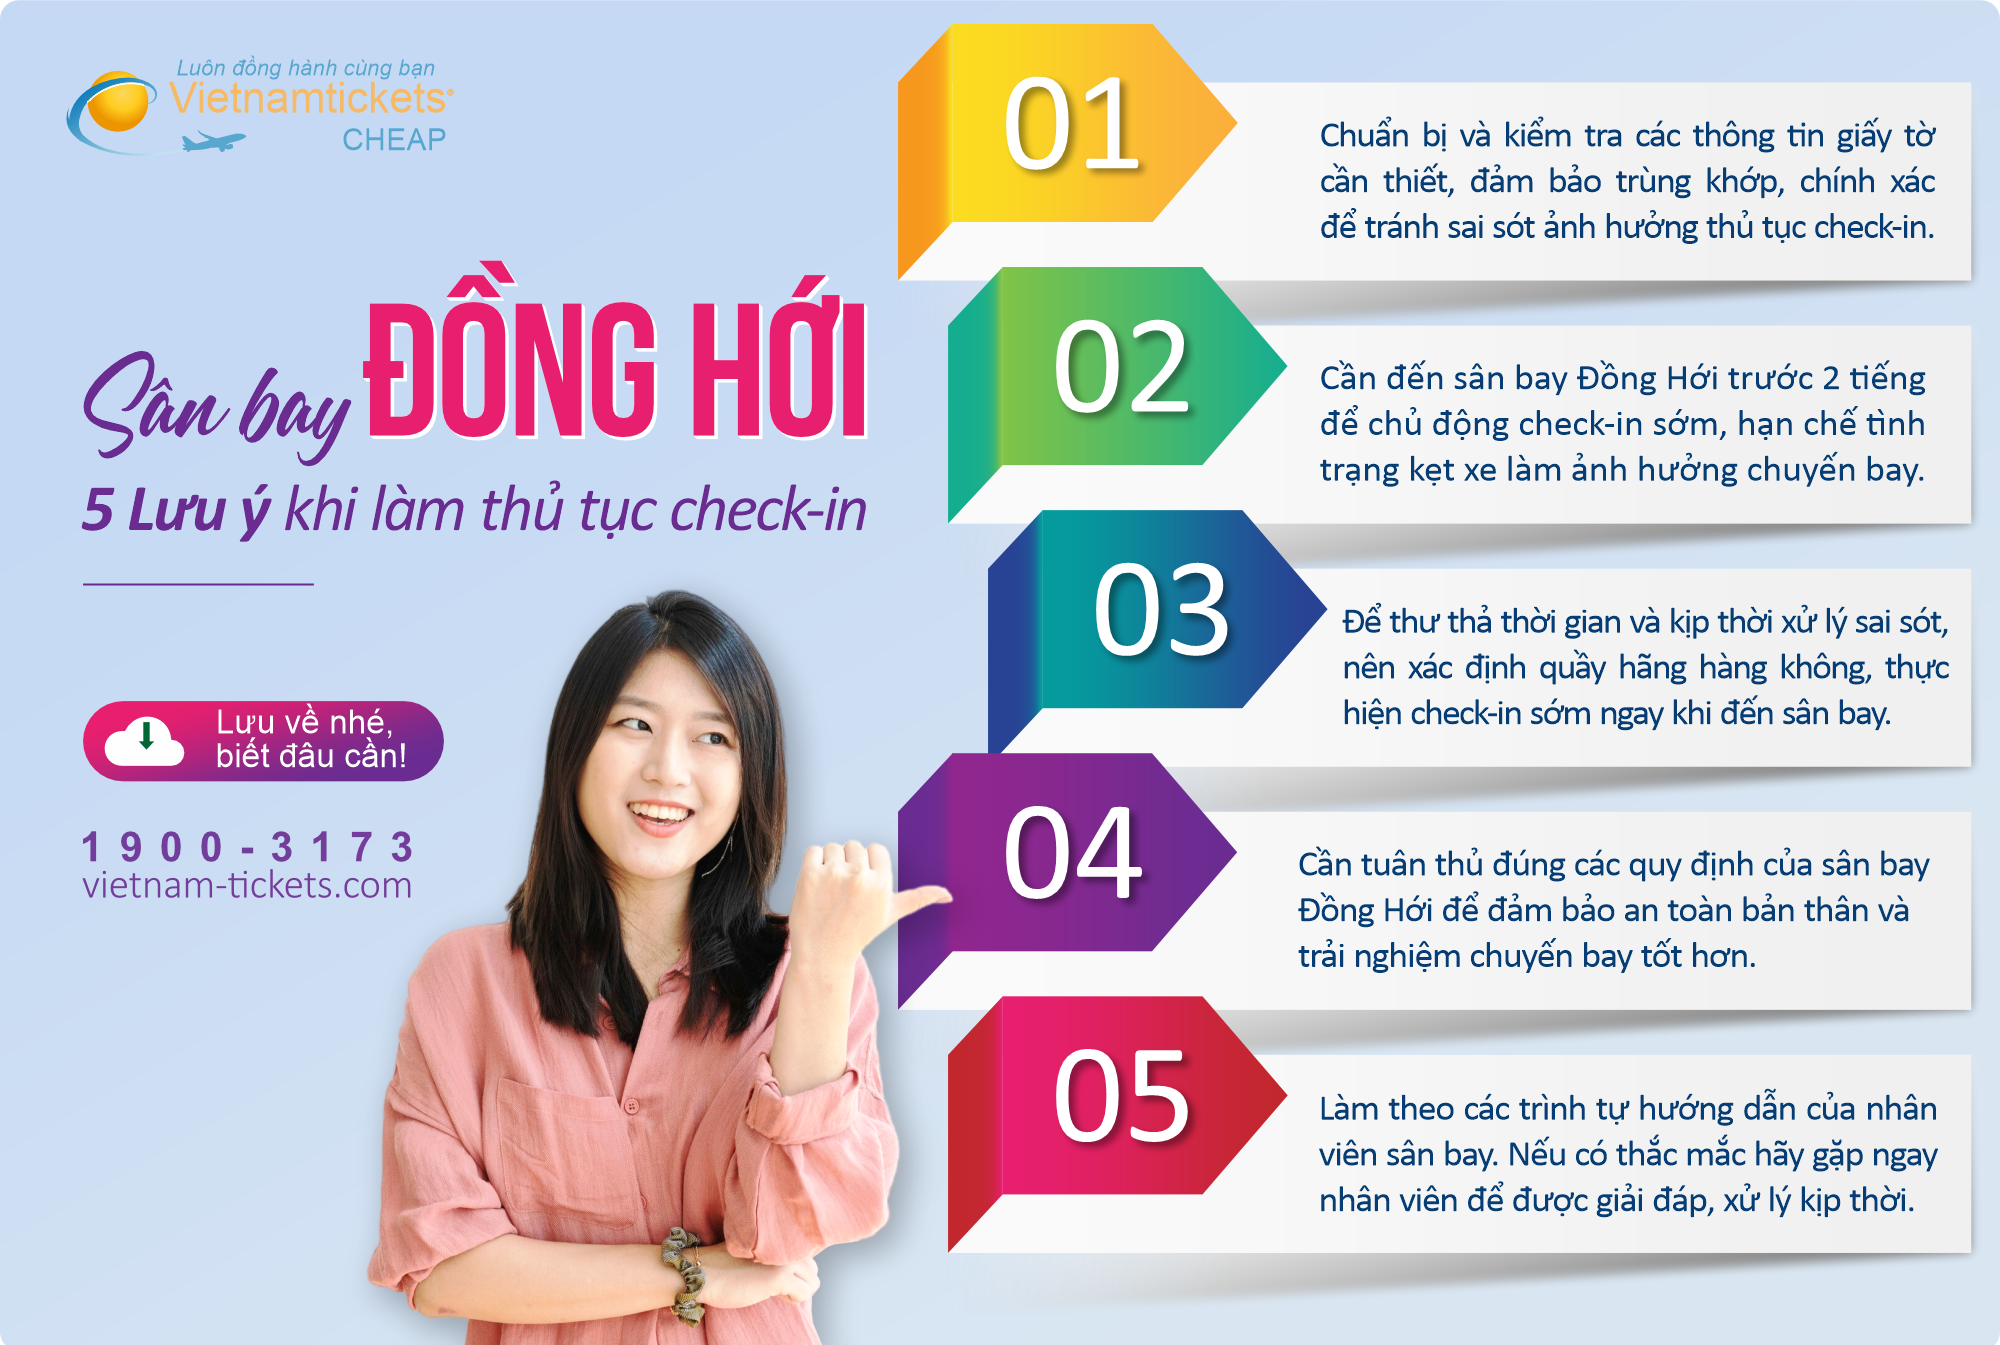 Kinh nghiệm check-in nhanh chóng tại sân bay Đồng Hới - Quảng Bình